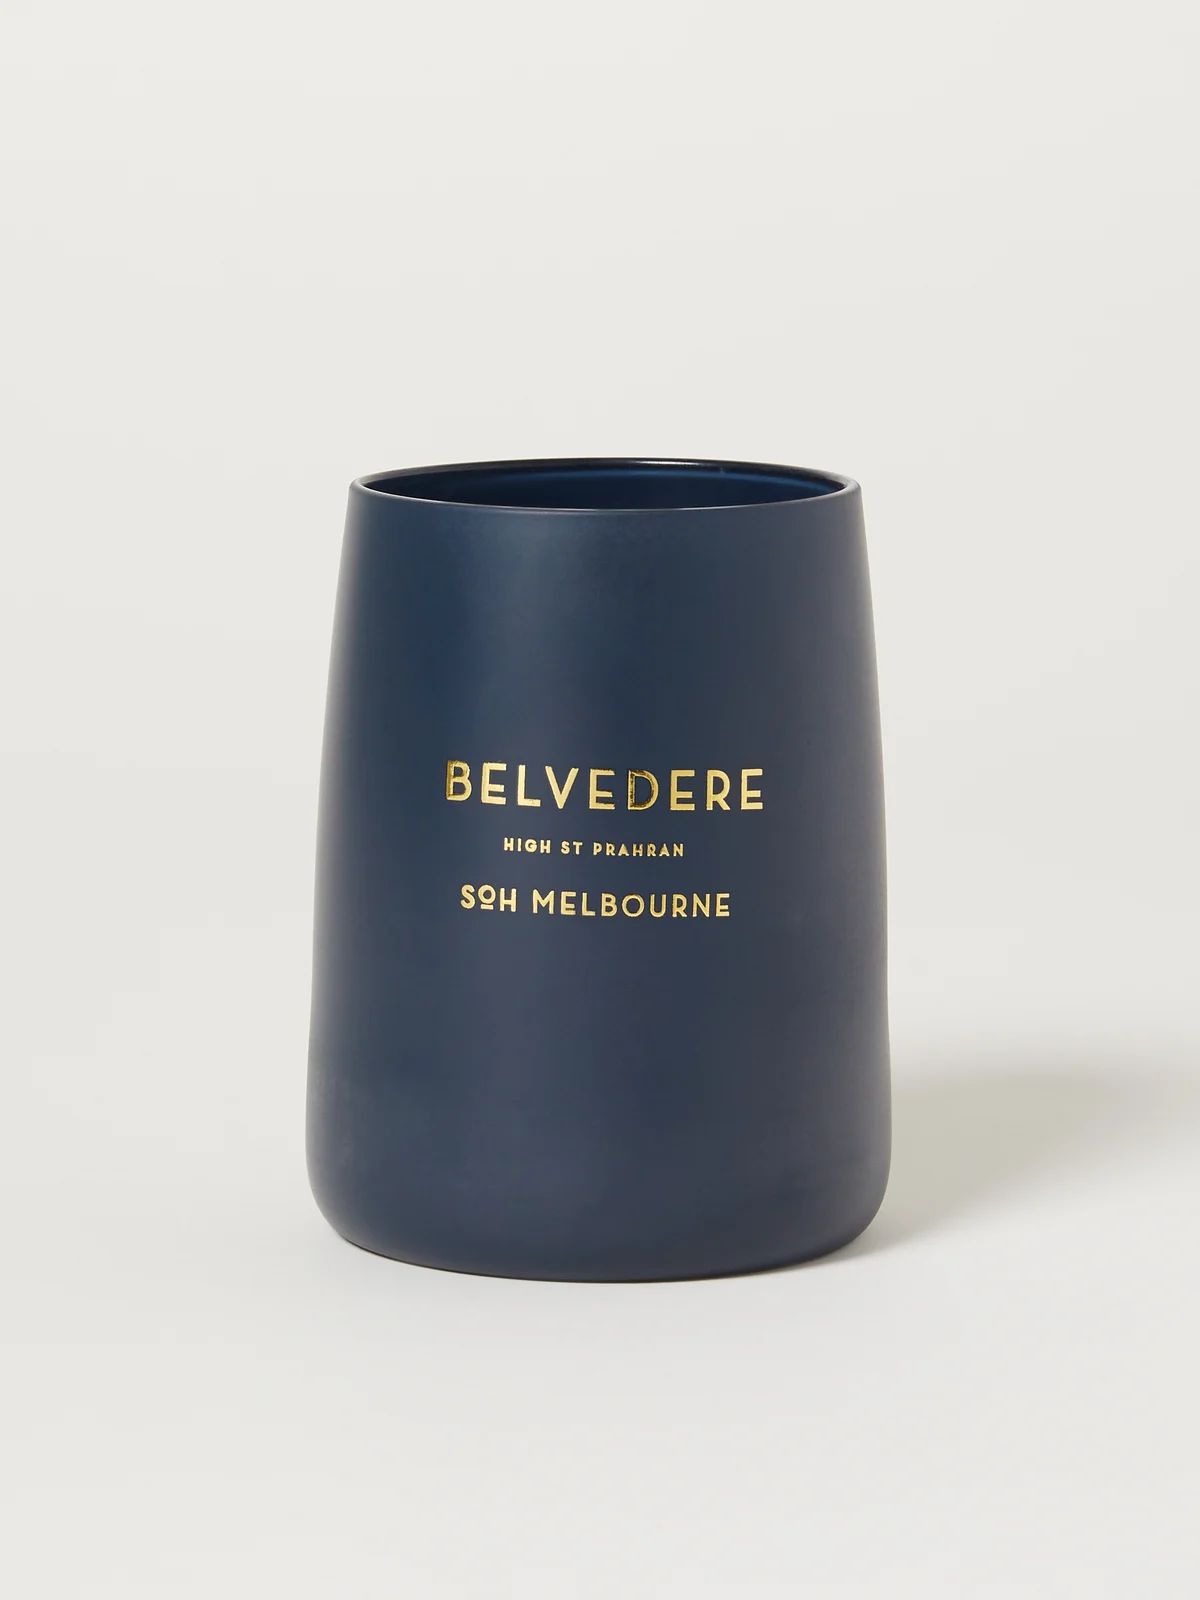 Belvedere Navy Matte Candle | Verishop